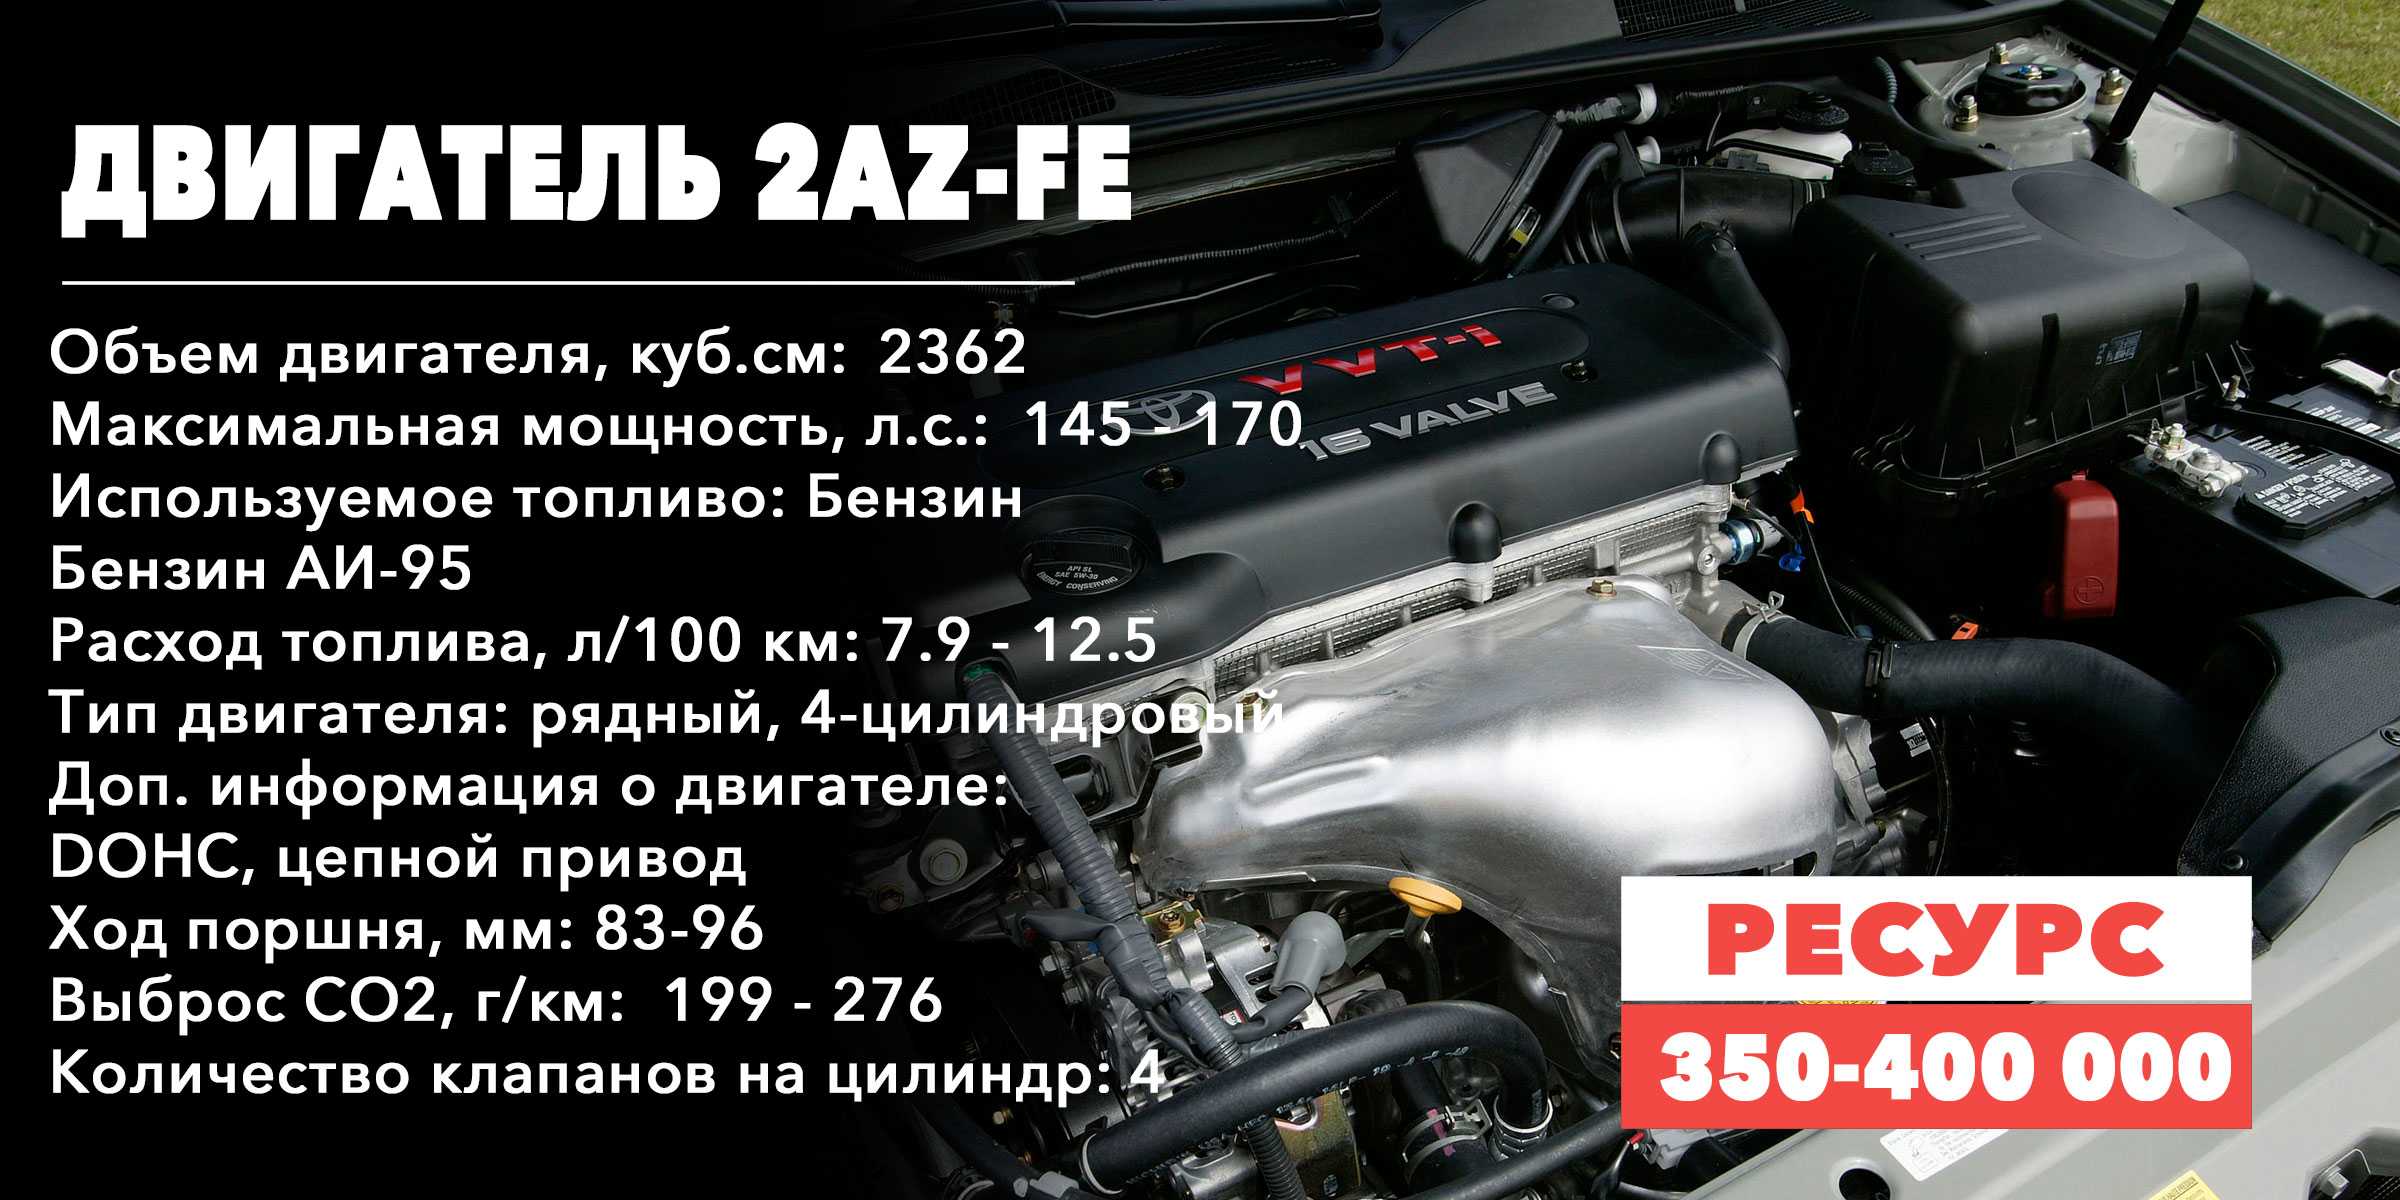 Двигатель 1uz-fe: характеристики, расход топлива, обслуживание